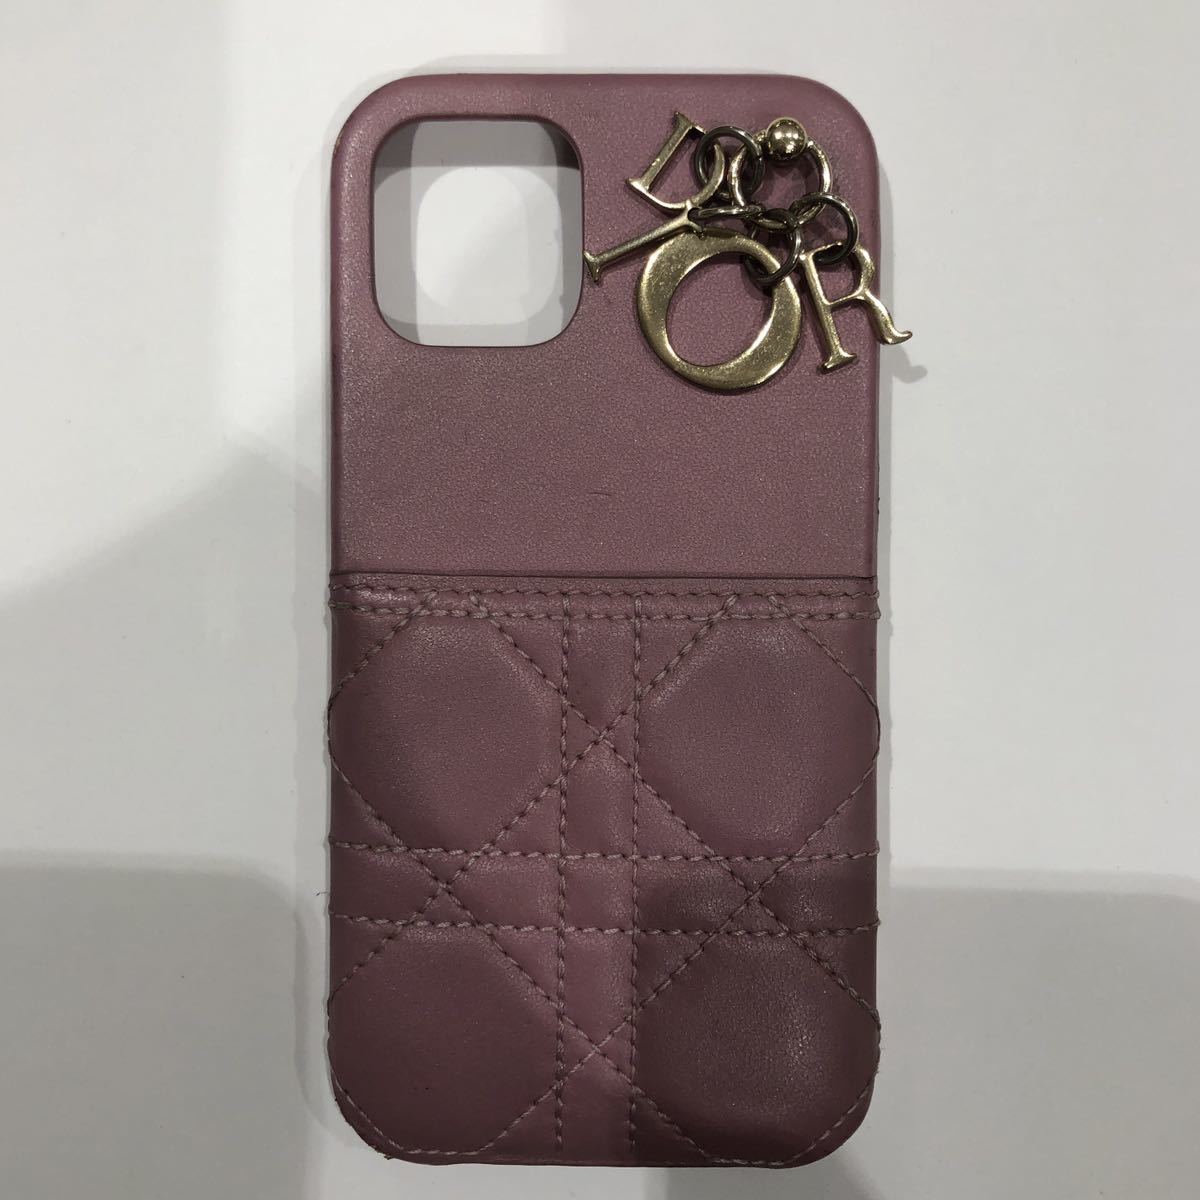 【Christian Dior 】クリスチャンディオール iPhoneケース 47-MA-1211 レザー ピンク ゴールド ロゴチャーム レディース ts202312